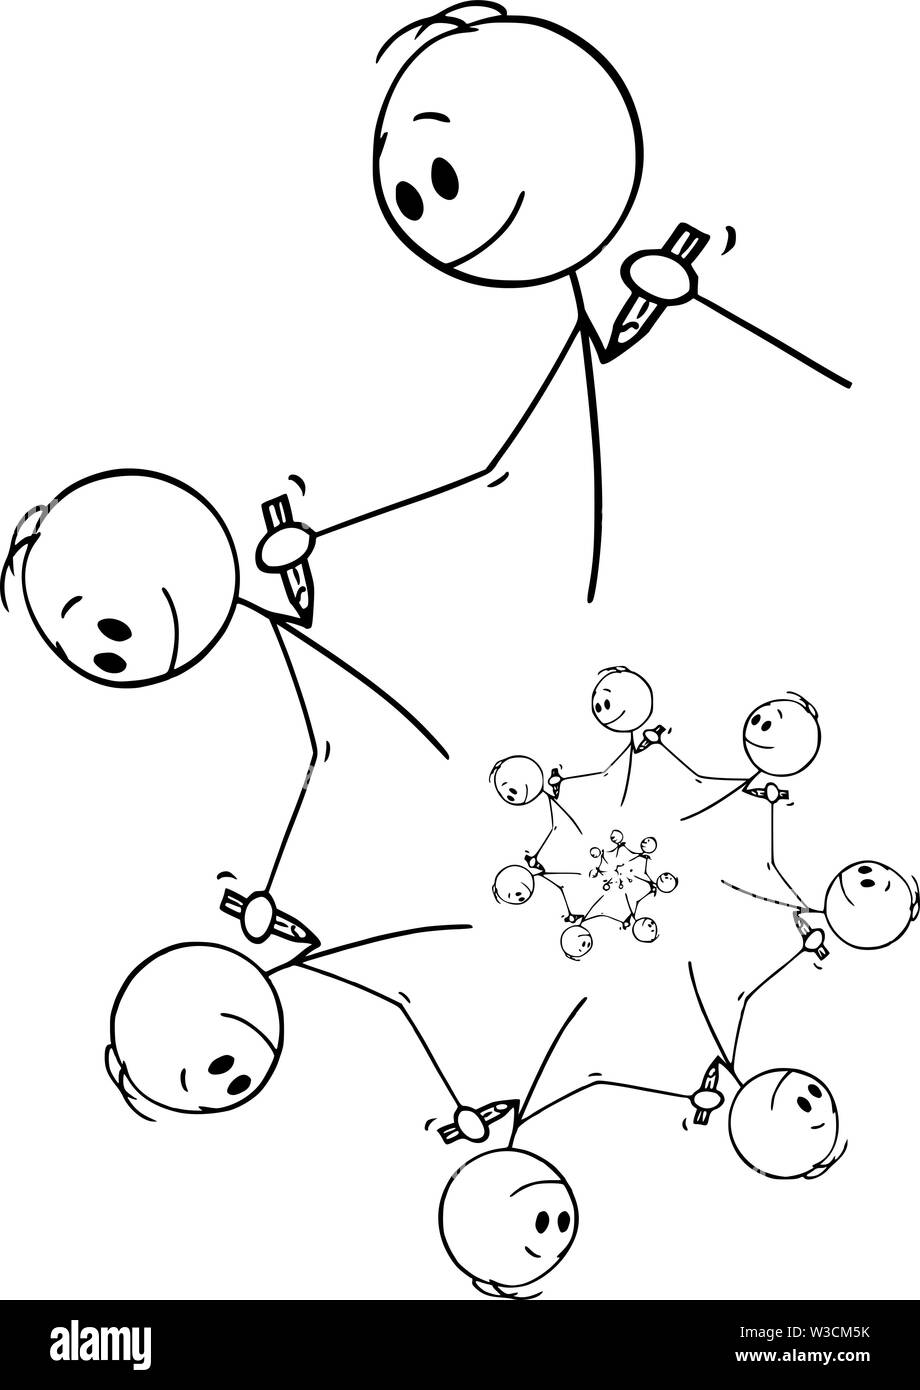 Vektor cartoon Strichmännchen Zeichnen konzeptionelle Darstellung der fractal Element der Männer oder der Künstler Zeichnen mit Bleistift Erstellen von endlosen Spirale design Element. Stock Vektor